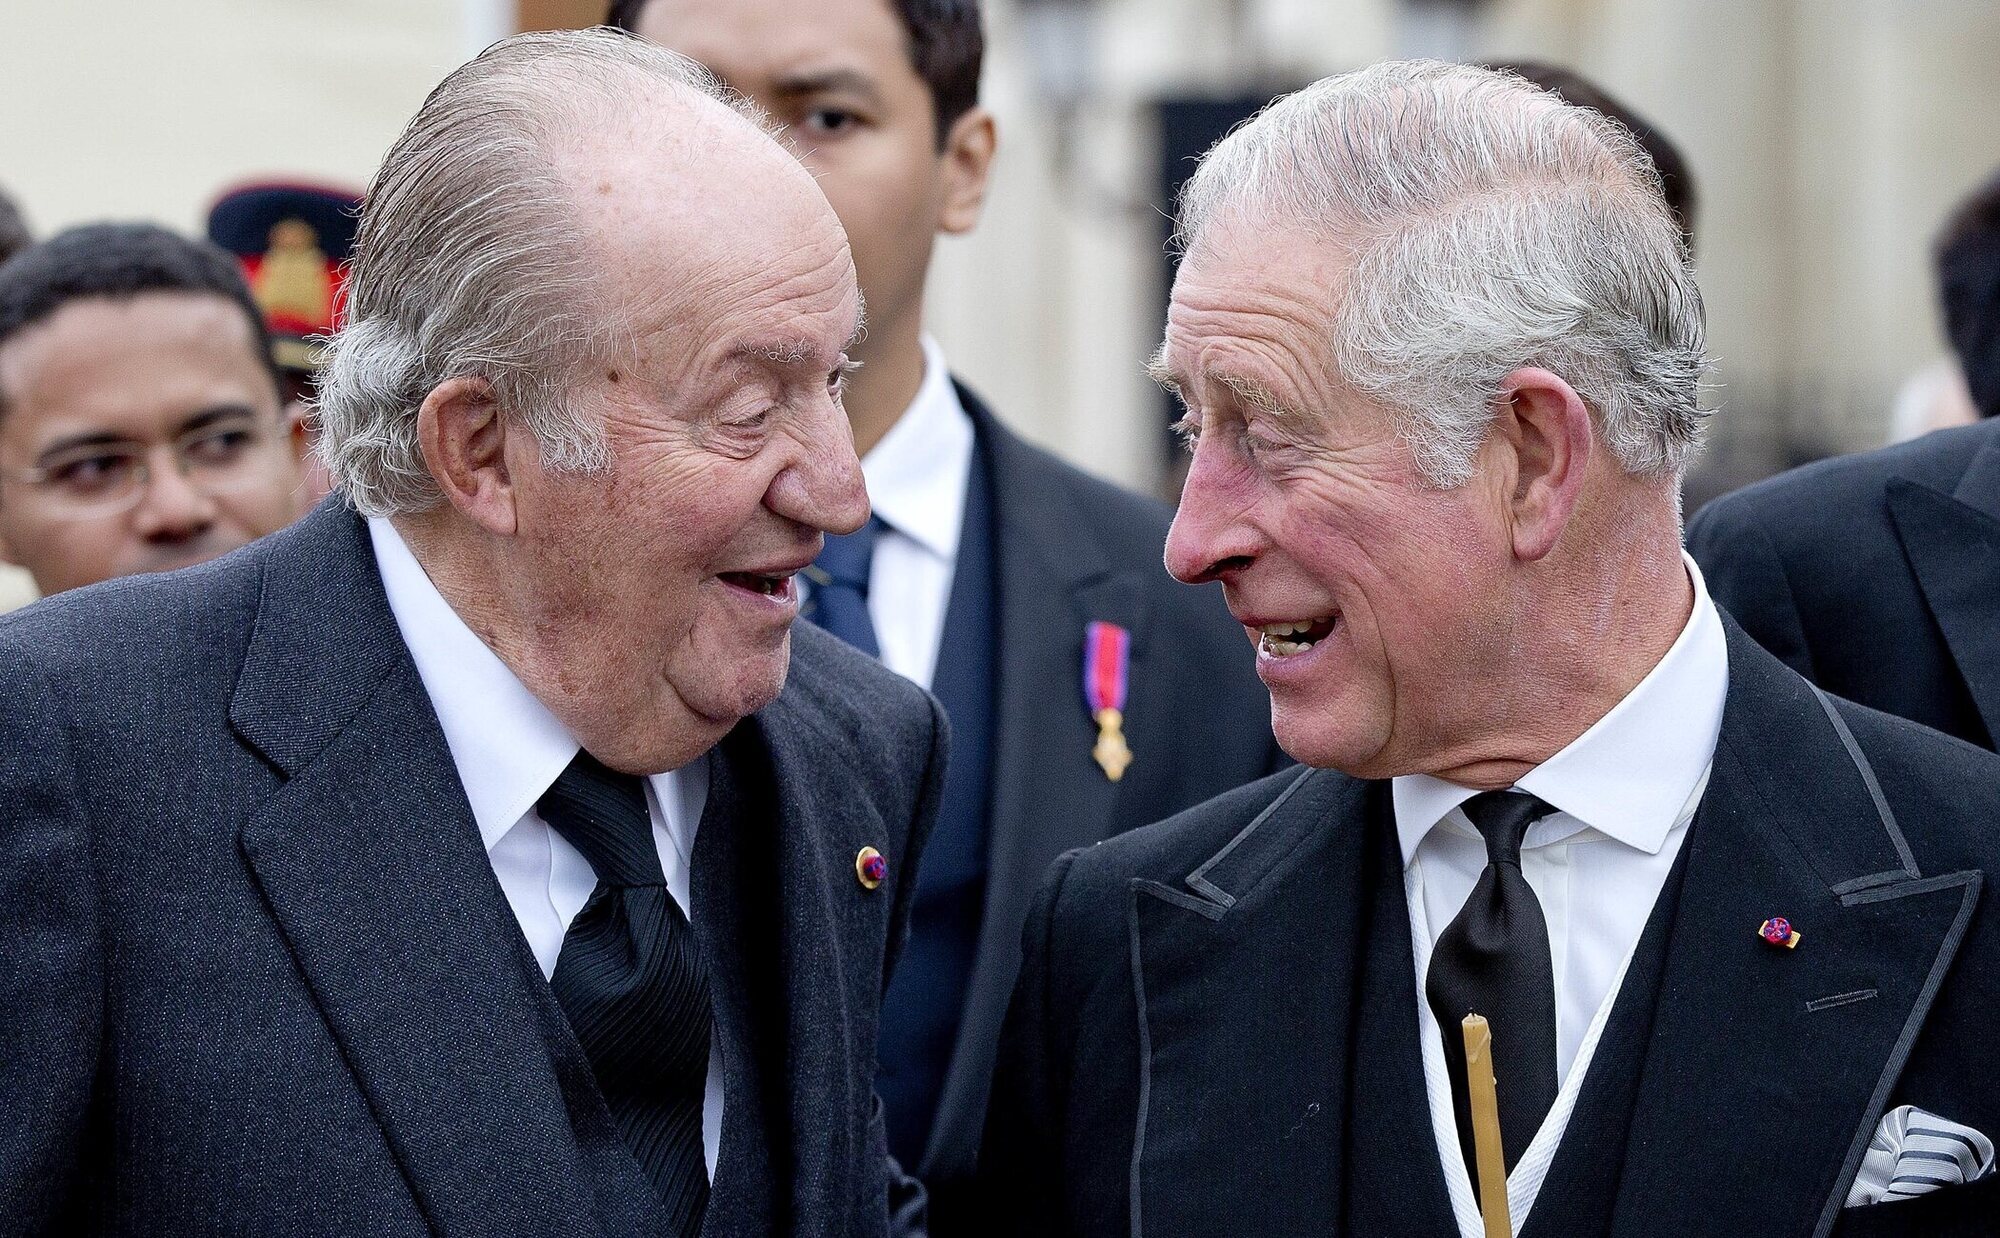 El Rey Juan Carlos llamó al Rey Carlos III para felicitarle por su Coronación a la que no pudo asistir